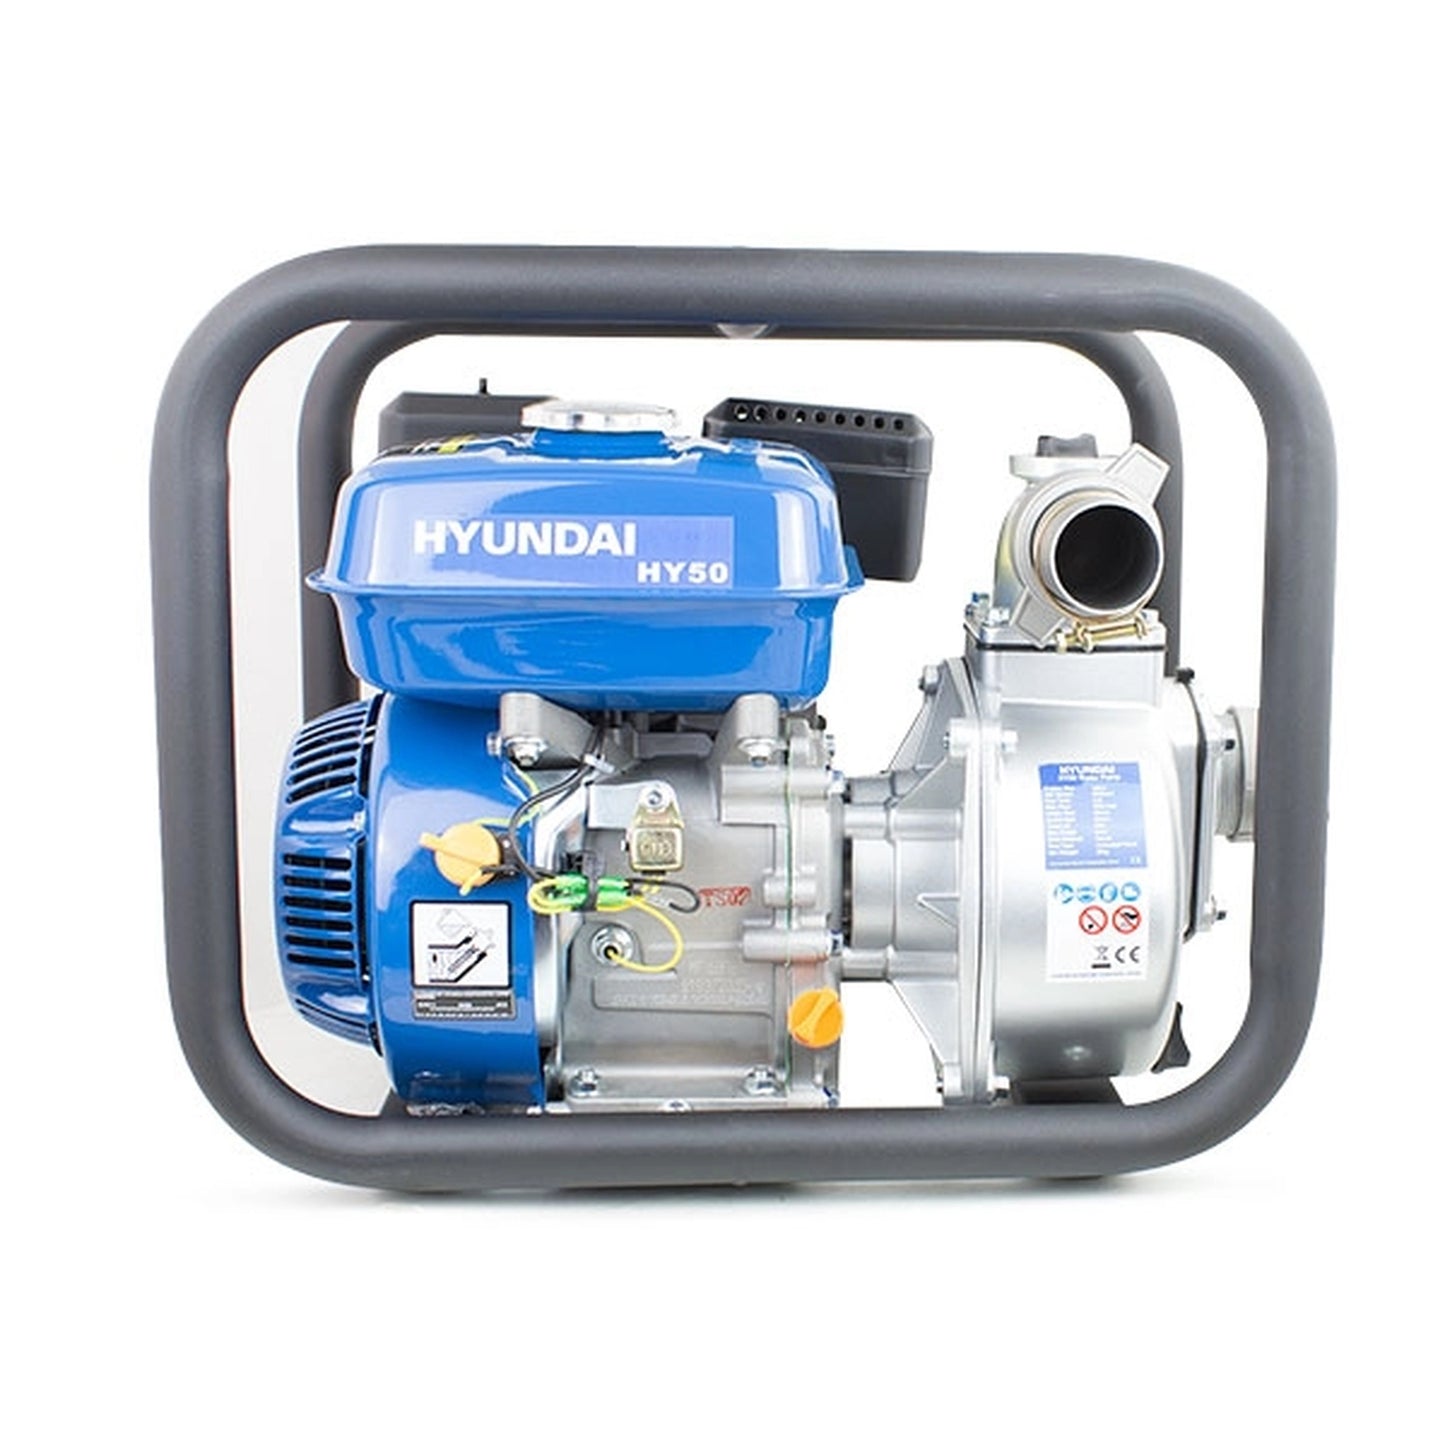 Hyundai HY50 Professional Petrol Water Pump 163cc 5.5hp